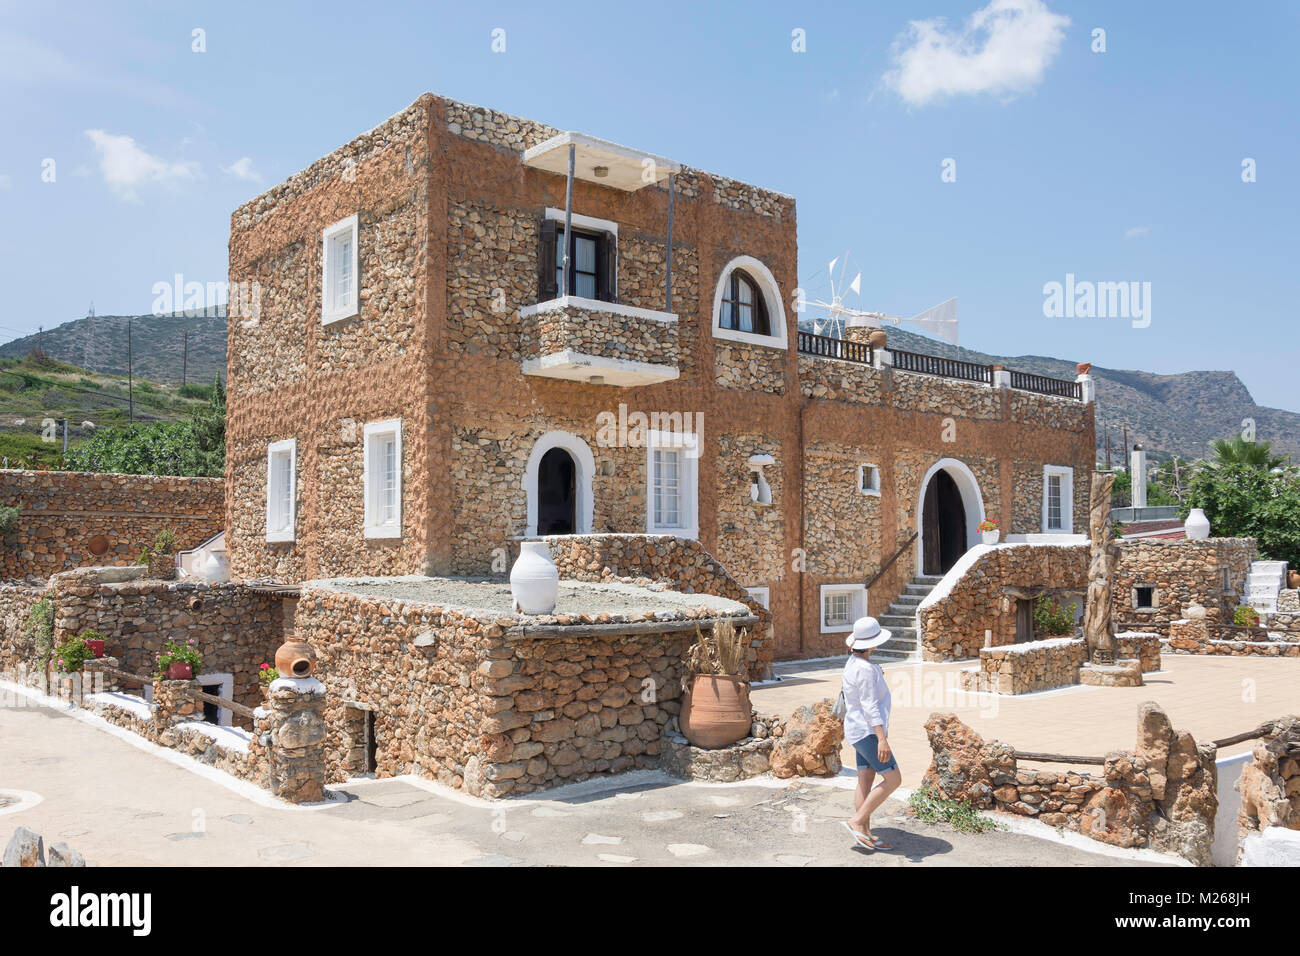 Typische kretische Haus Lychnostatis kretische Open Air Museum, Hersonissos, Heraklion, Kreta (Kriti), Griechenland Stockfoto